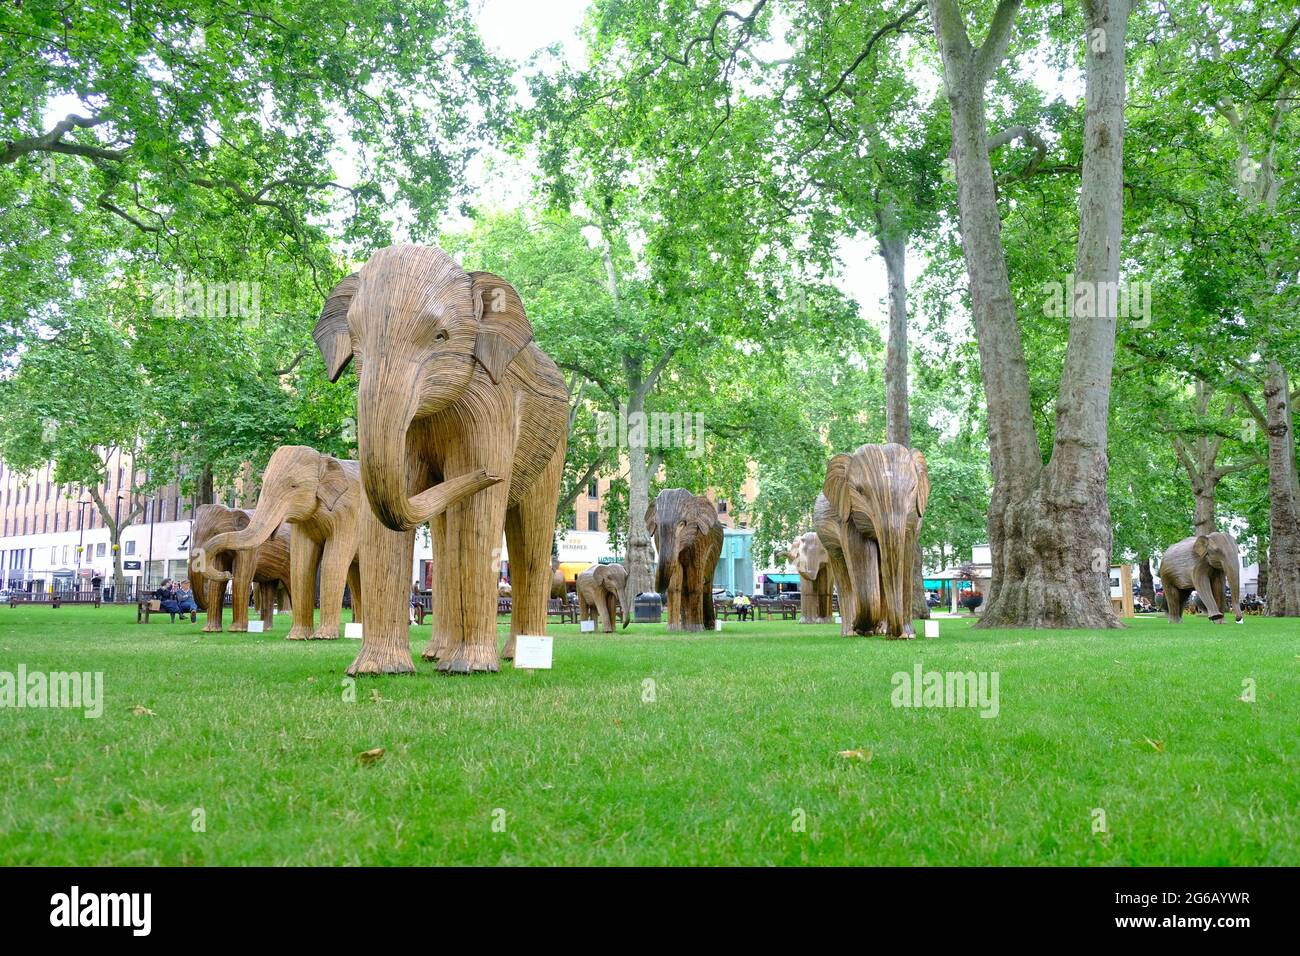 Un troupeau d'éléphants est exposé dans les environs verts de la place Berkerley dans le cadre d'une campagne environnementale visant à mettre en évidence l'extinction des animaux. Banque D'Images